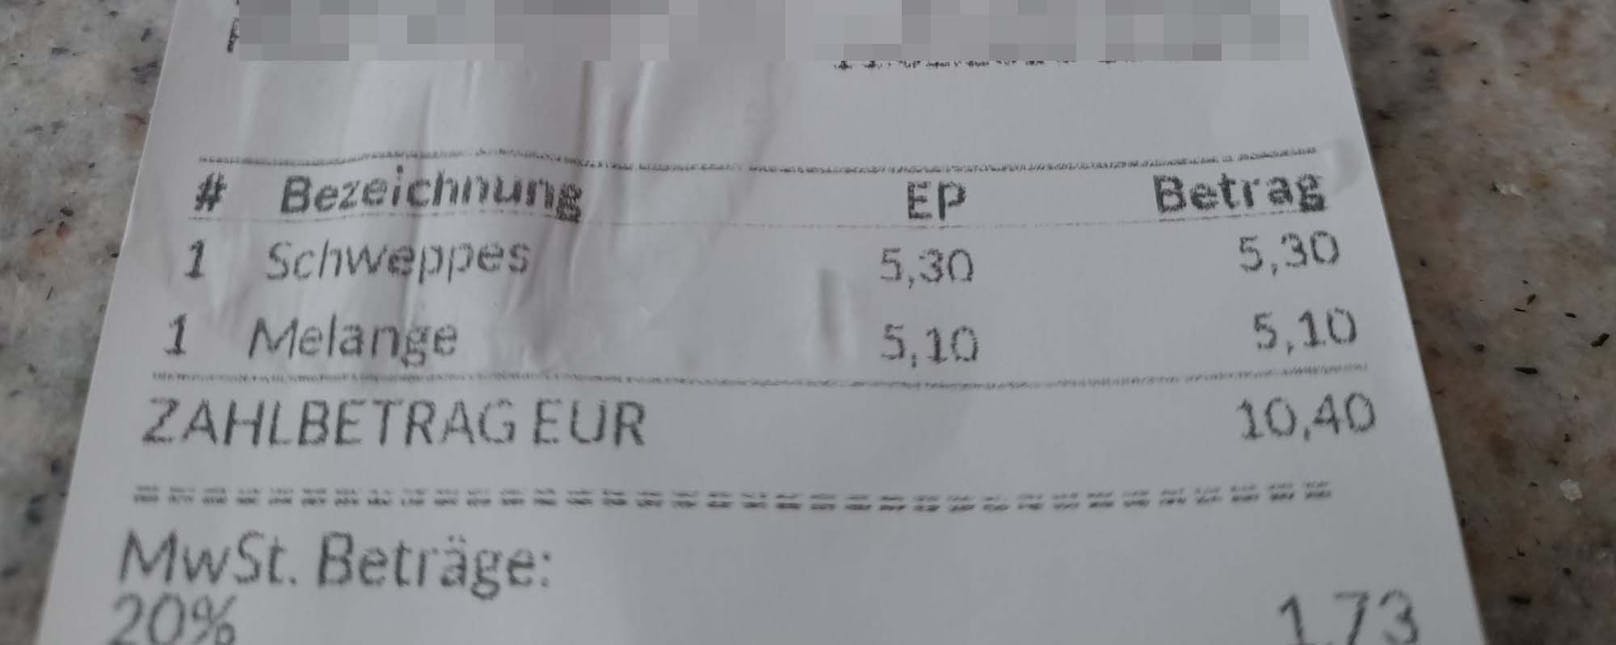 Ein Oberösterreicher zahlte kürzlich an einer Raststätte in Niederösterreich mehr als 10 Euro für ein kleines Schweppes (0,2 Liter) und eine Melange.